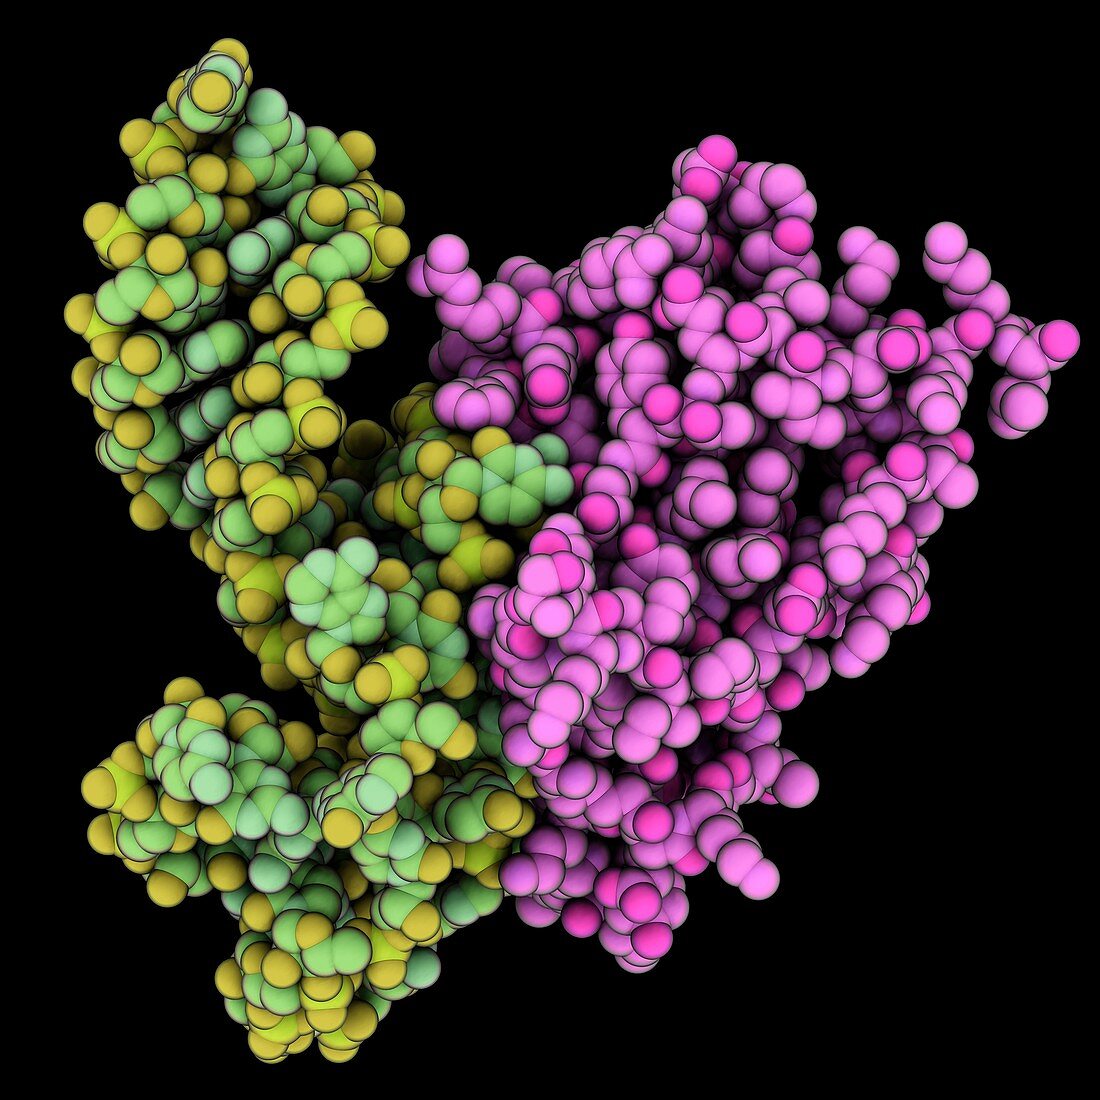 Transfer-messenger RNA complex